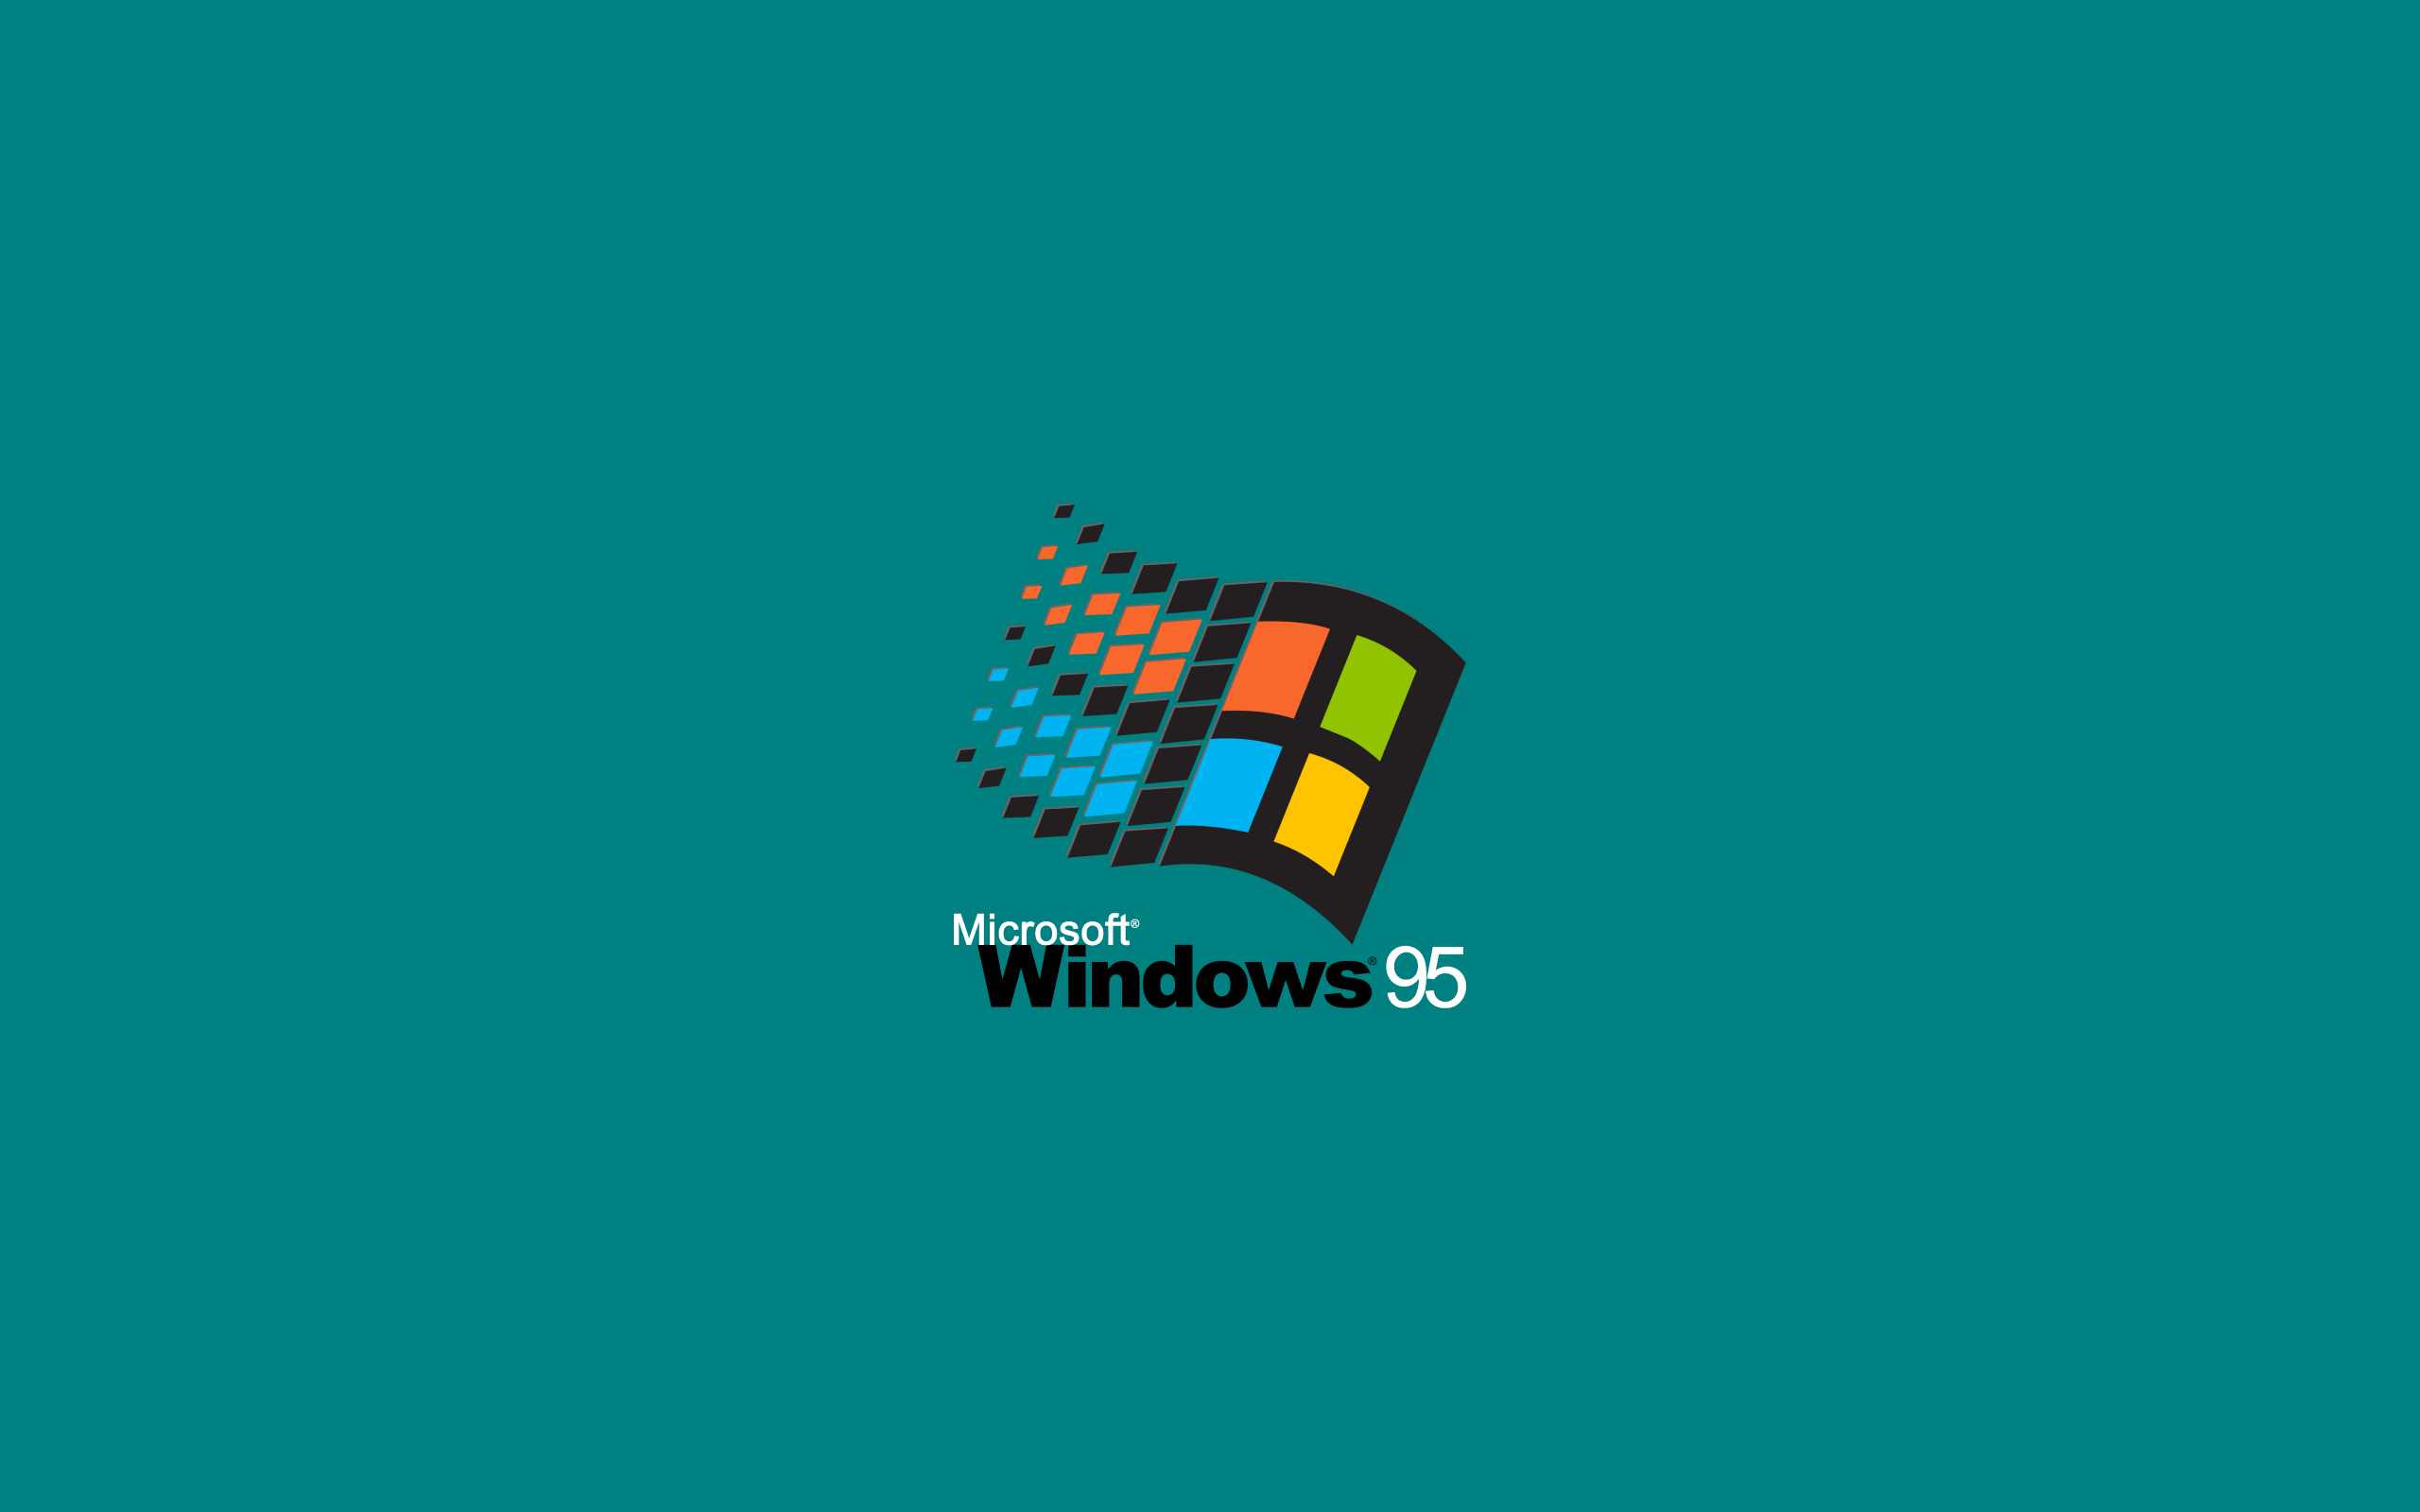 Hãy xem hình ảnh nền Desktop xanh của Windows 95, với sự kết hợp của màu sắc và hình vẽ sẽ mang lại cho bạn cảm giác như đang lạc vào một thế giới tiên tưởng đầy màu sắc và vui nhộn.